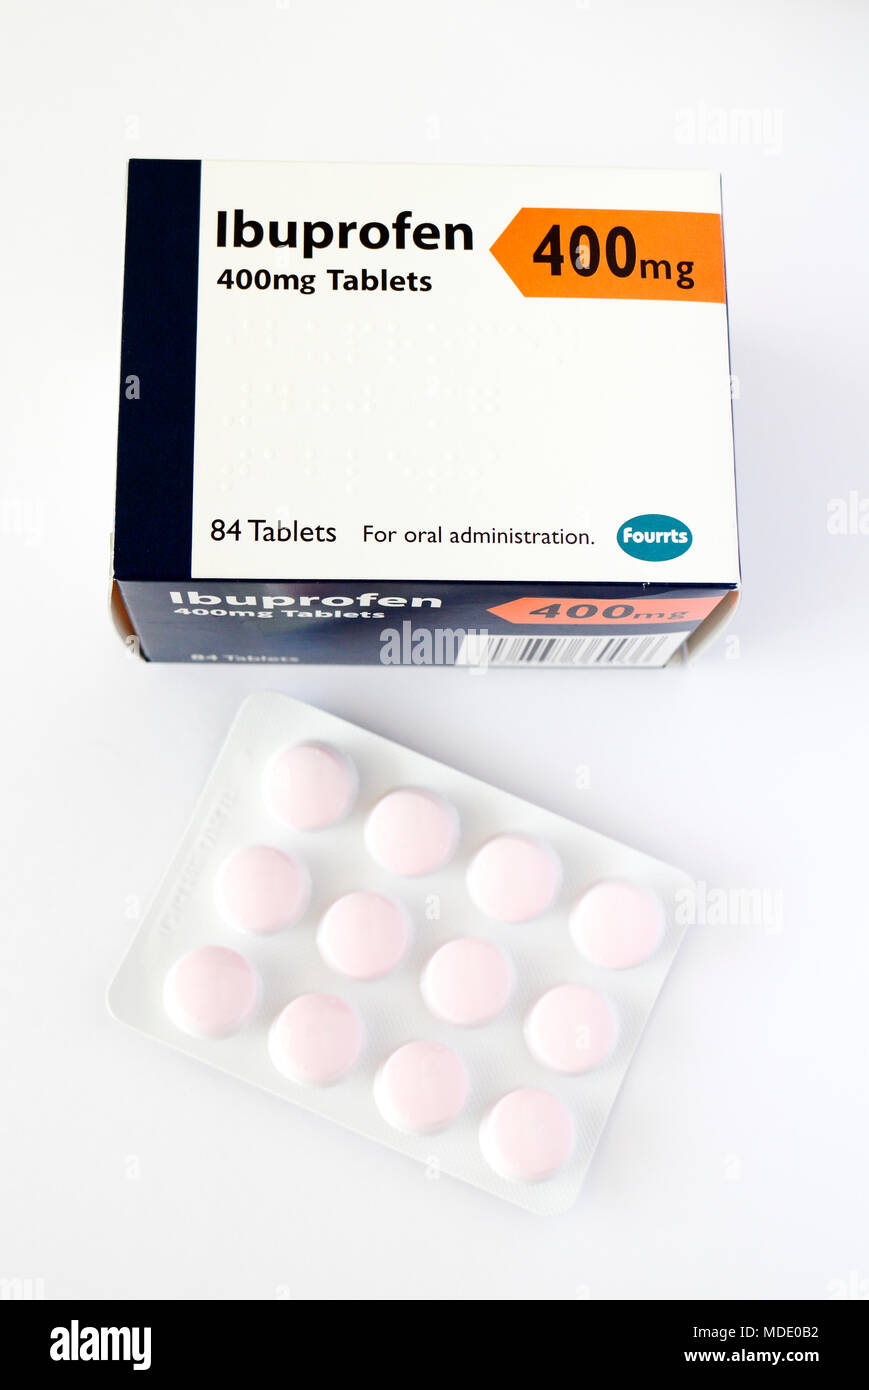 Medicinali ibuprofene immagini e fotografie stock ad alta risoluzione -  Alamy